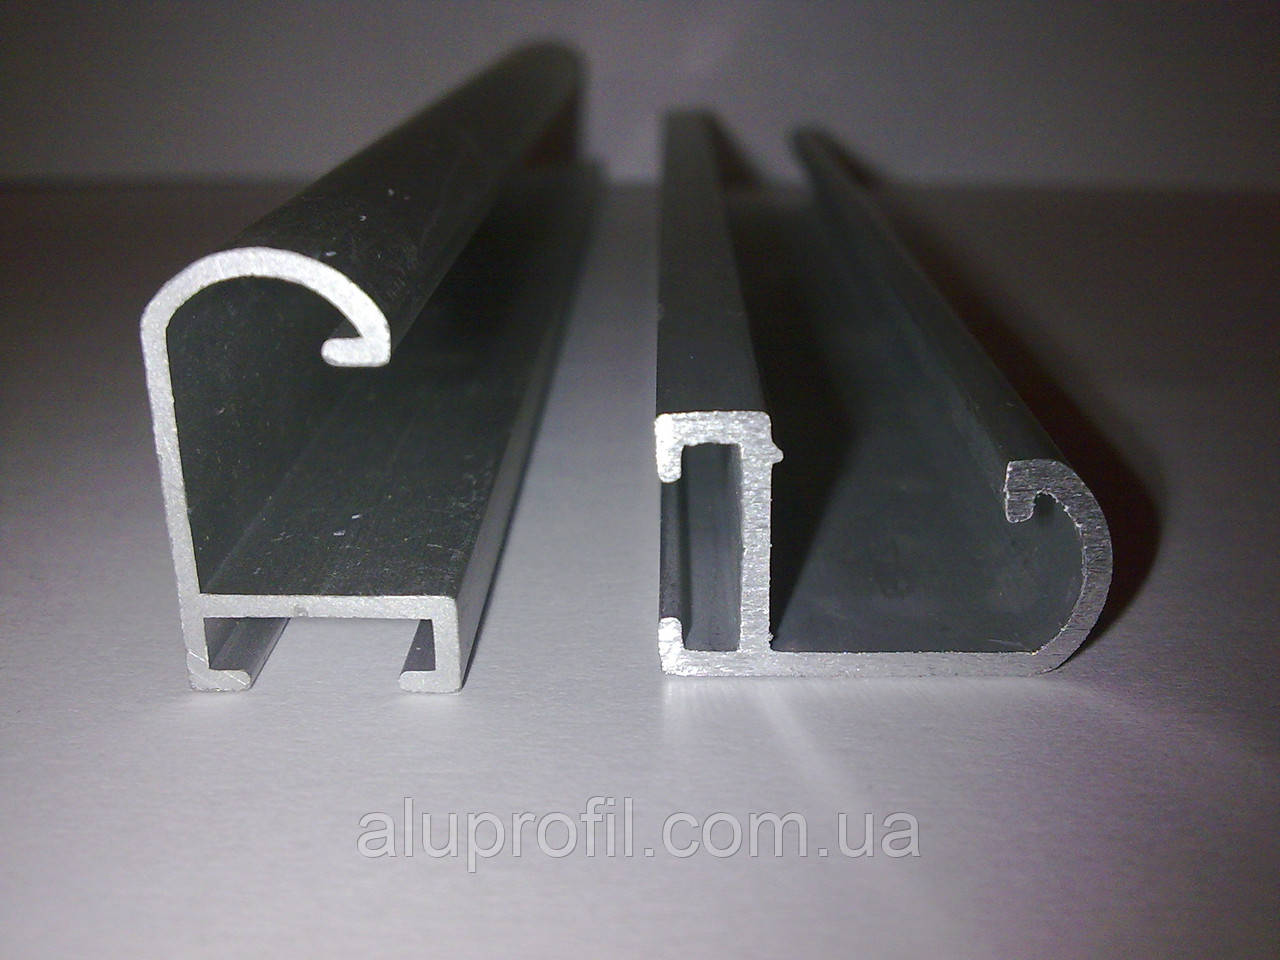 Алюмінієвий профіль — алюмінієвий рамочний профіль 20,5х12,7х1,2 AS